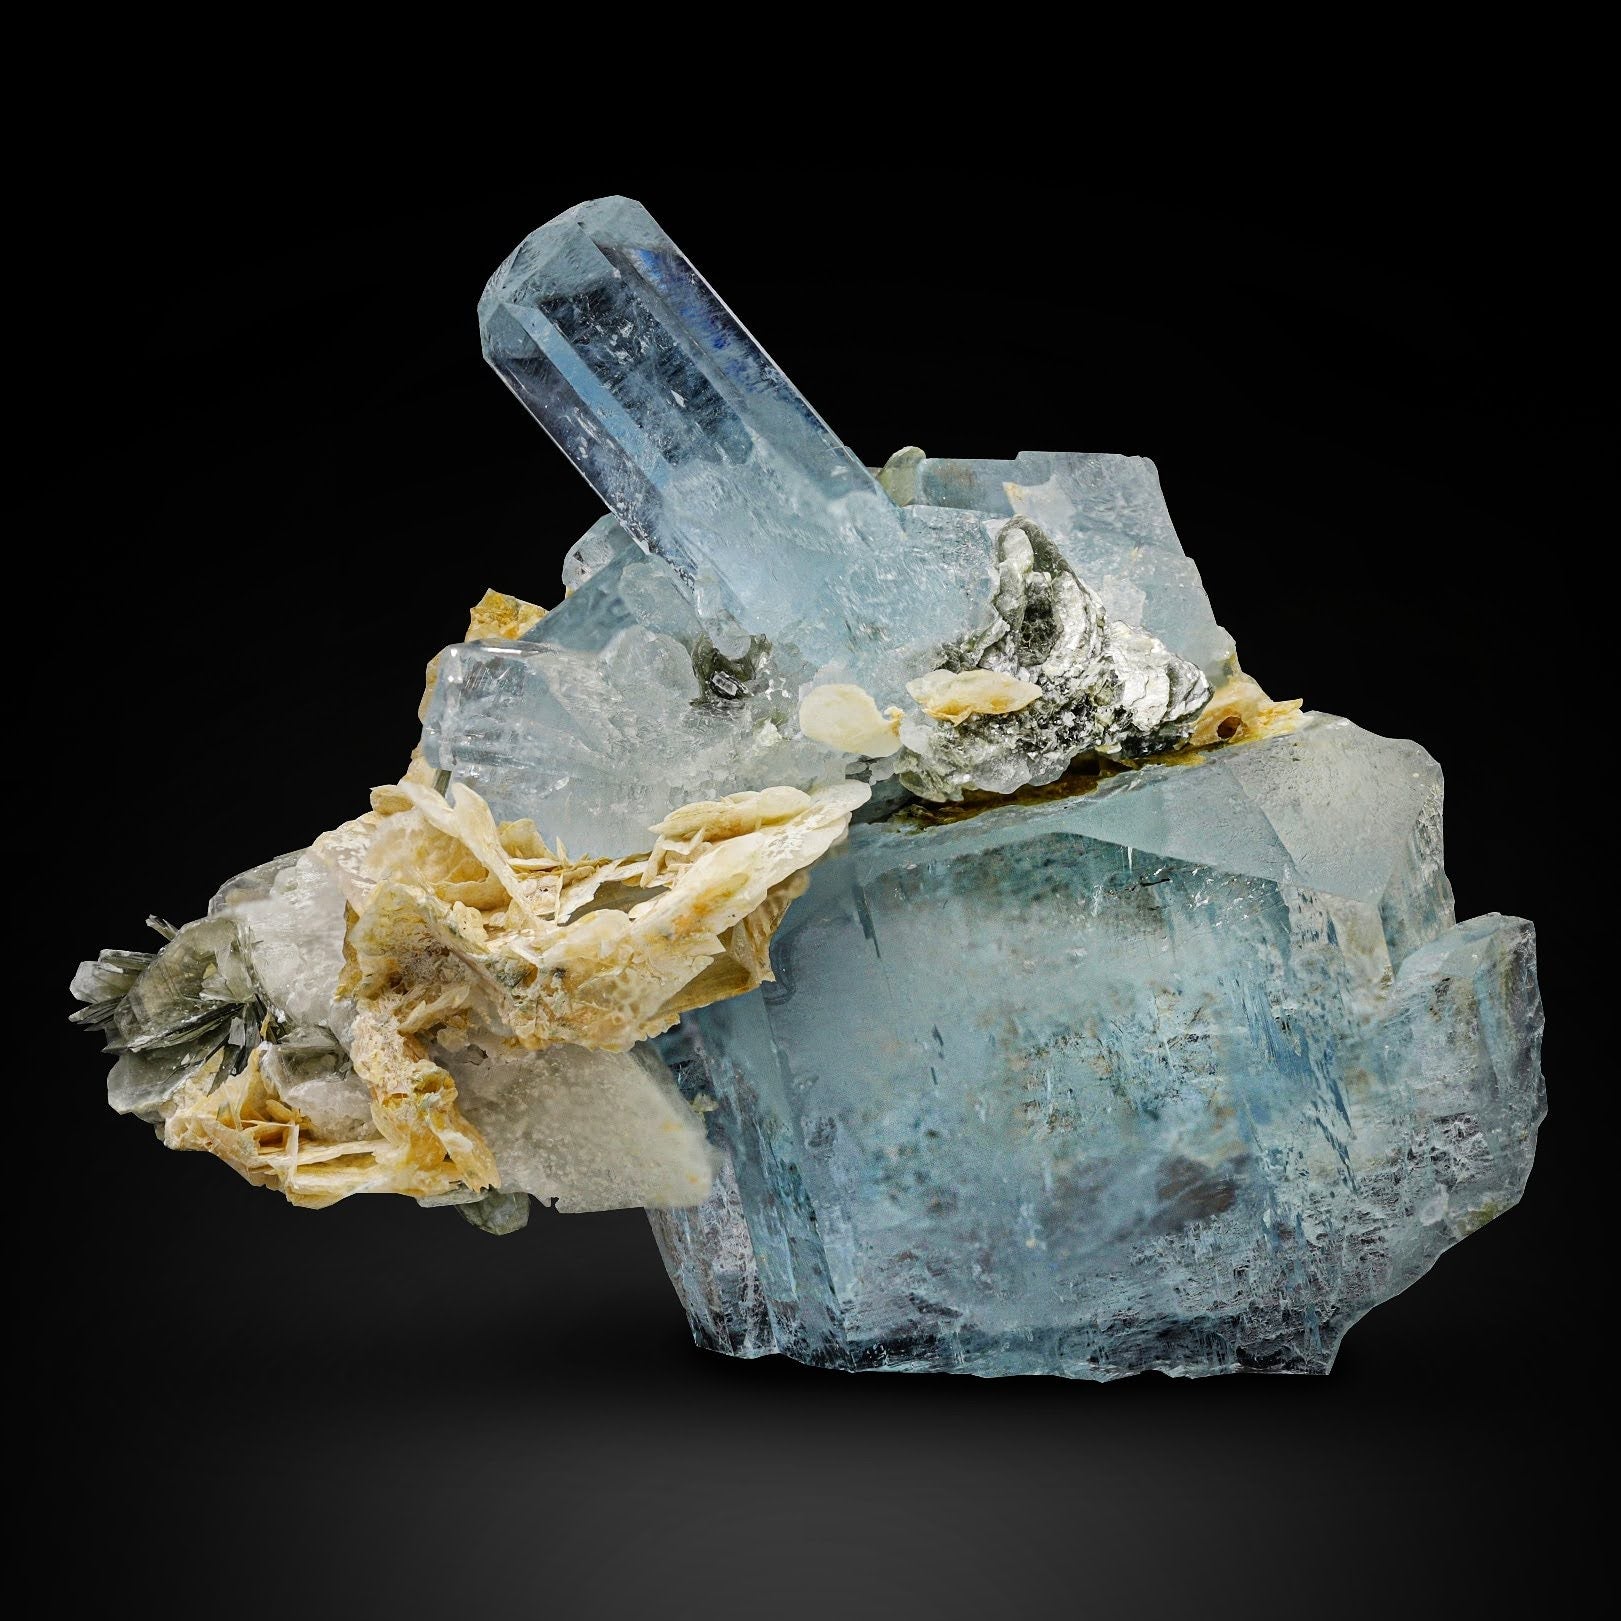 Blue Aquamarine Crystal with Calcite